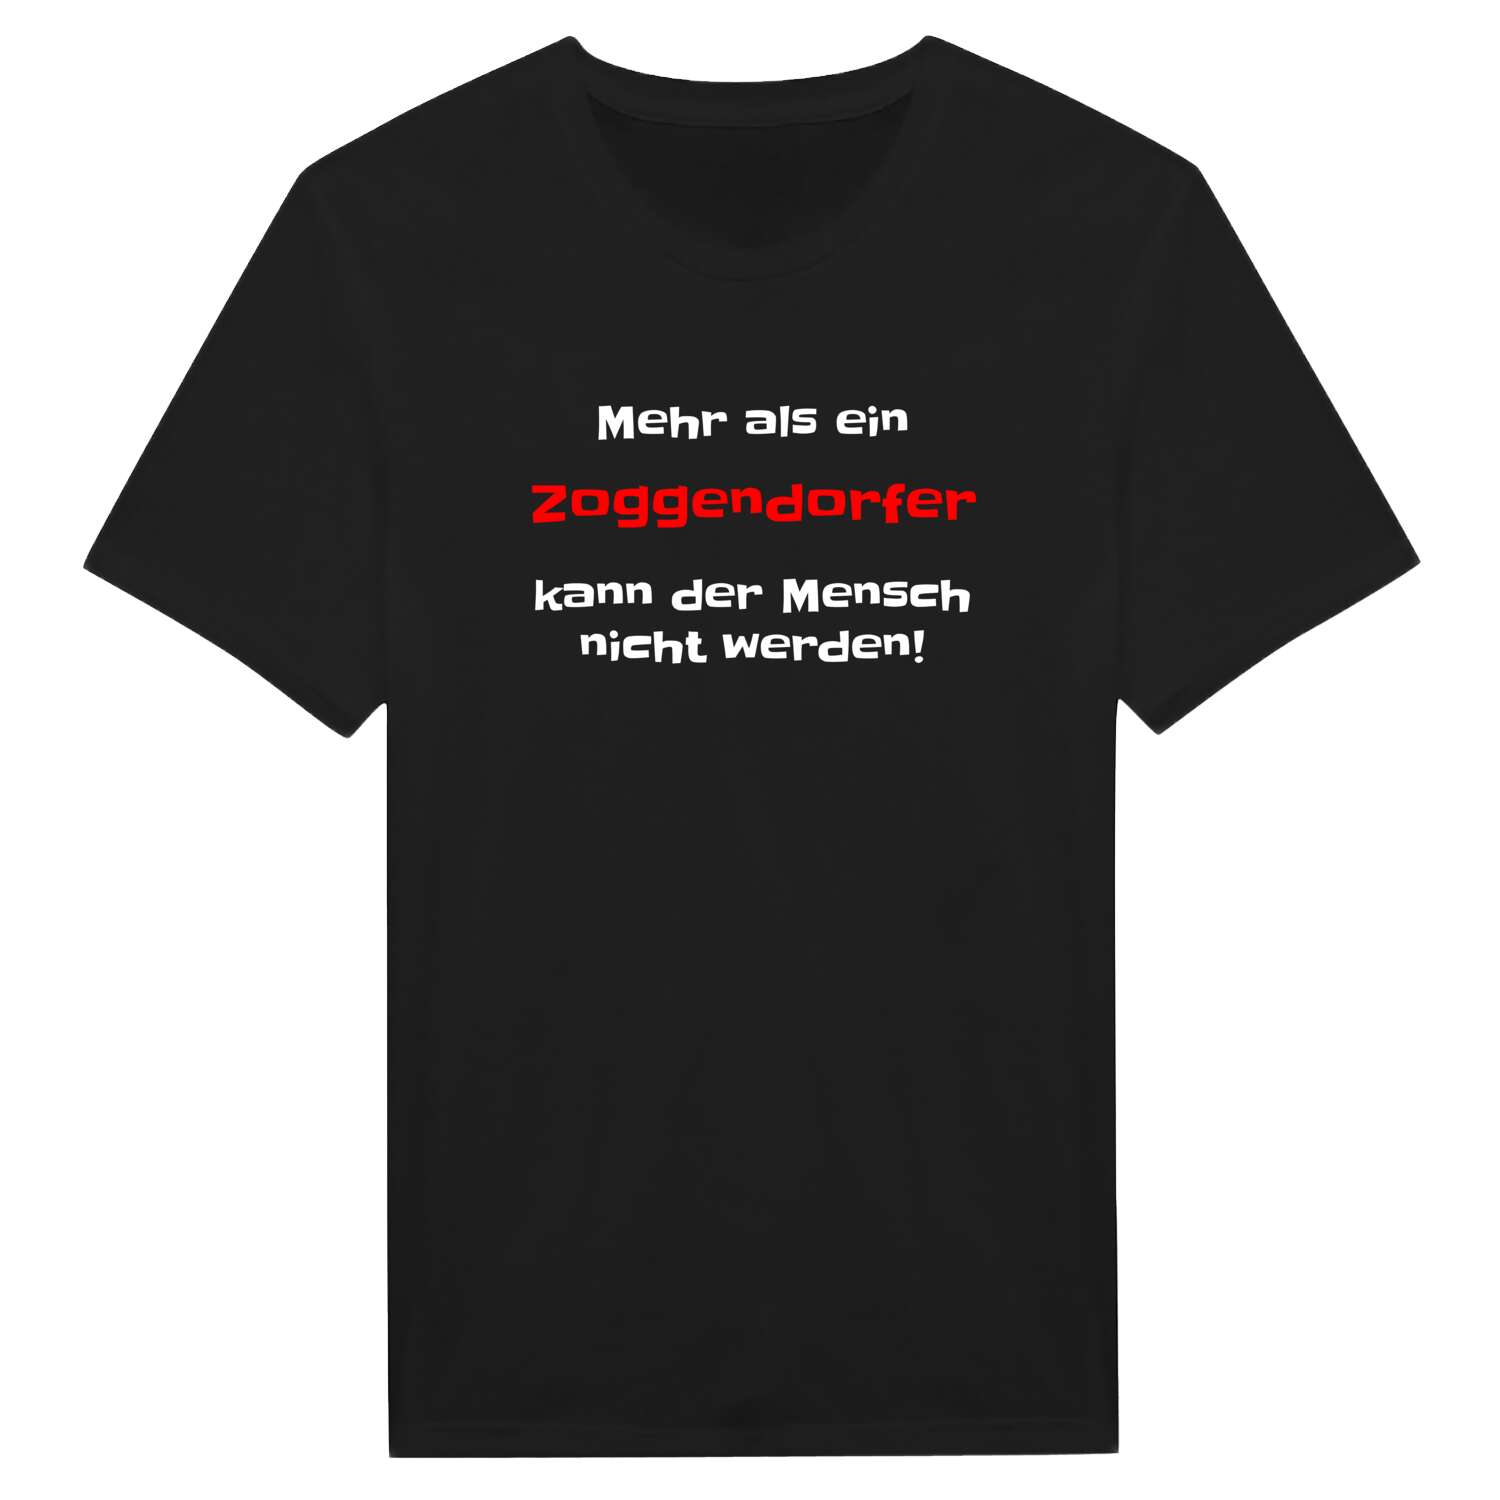 Zoggendorf T-Shirt »Mehr als ein«